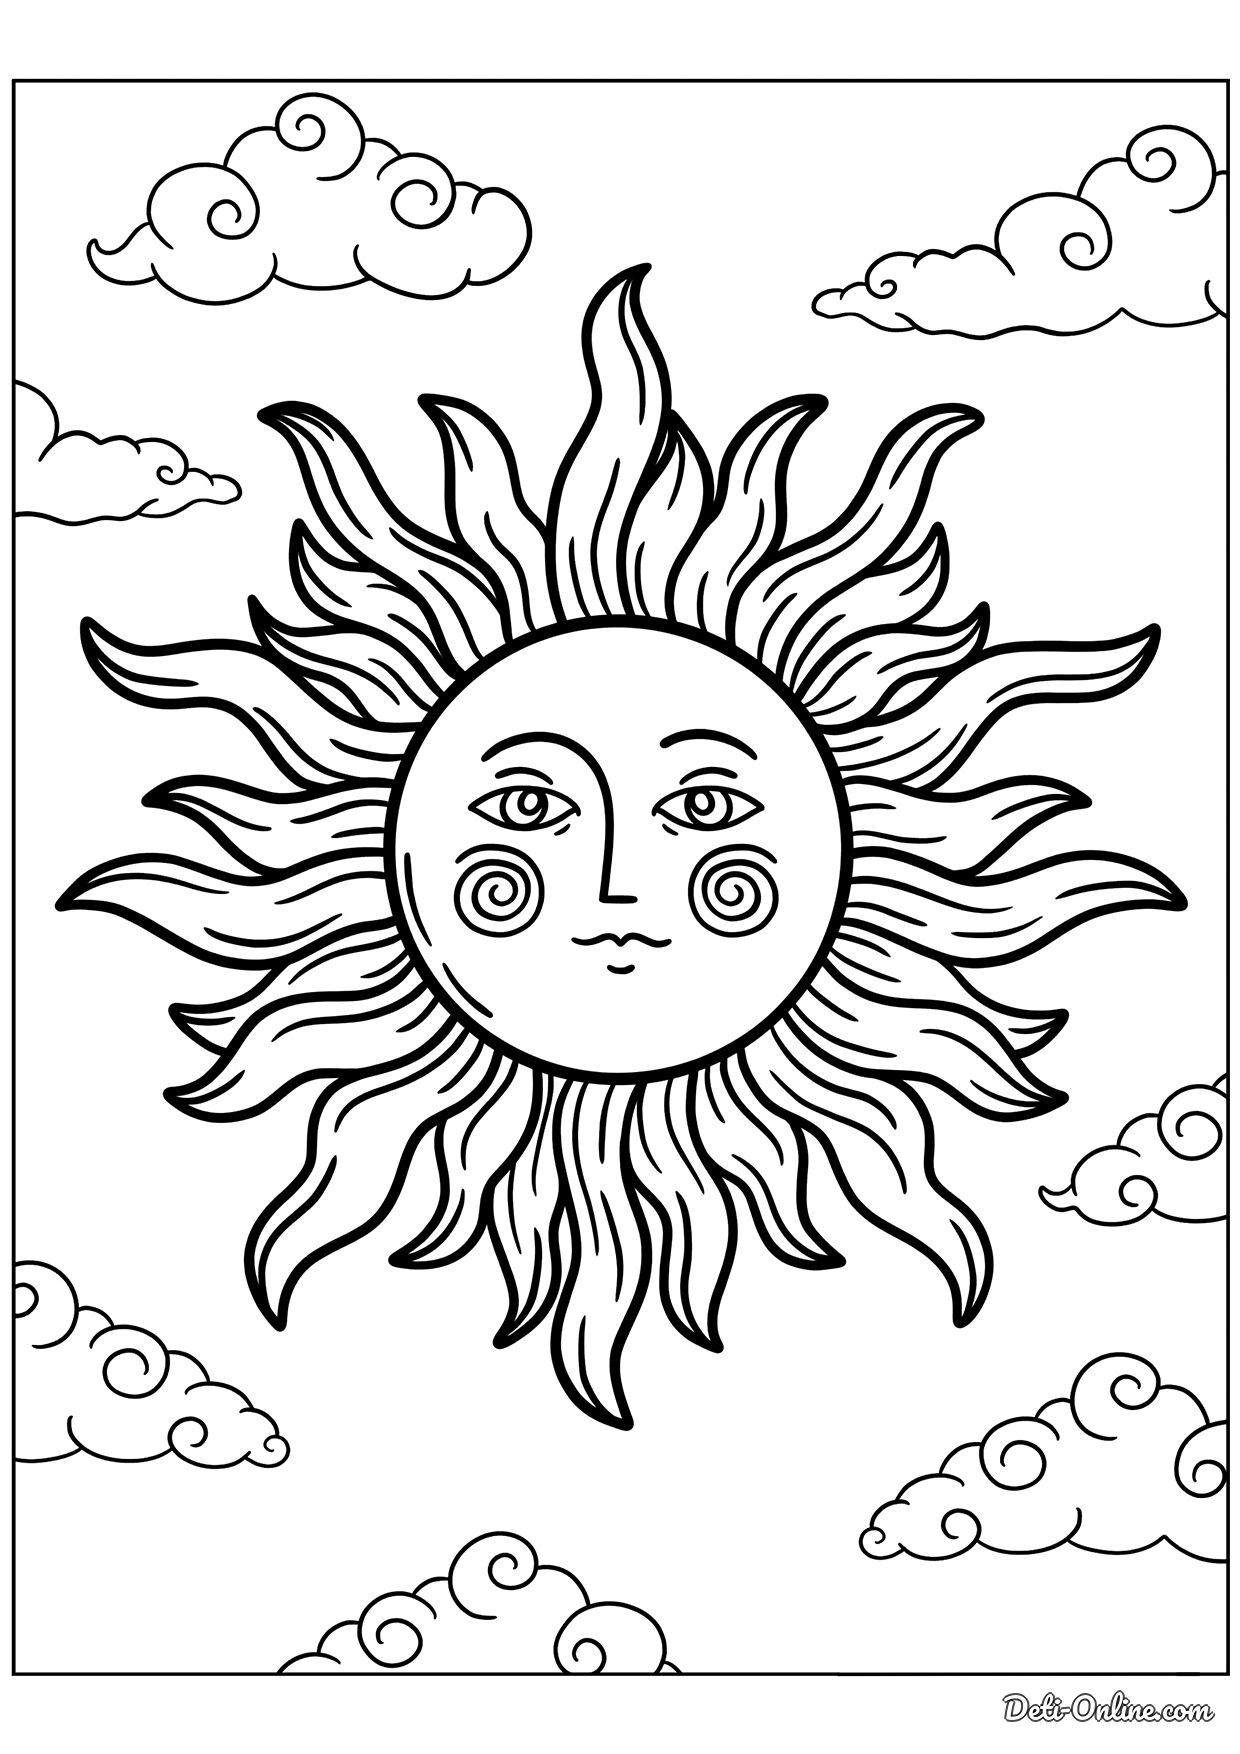 Раскраска Солнце за облаком по точкам распечатать бесплатно